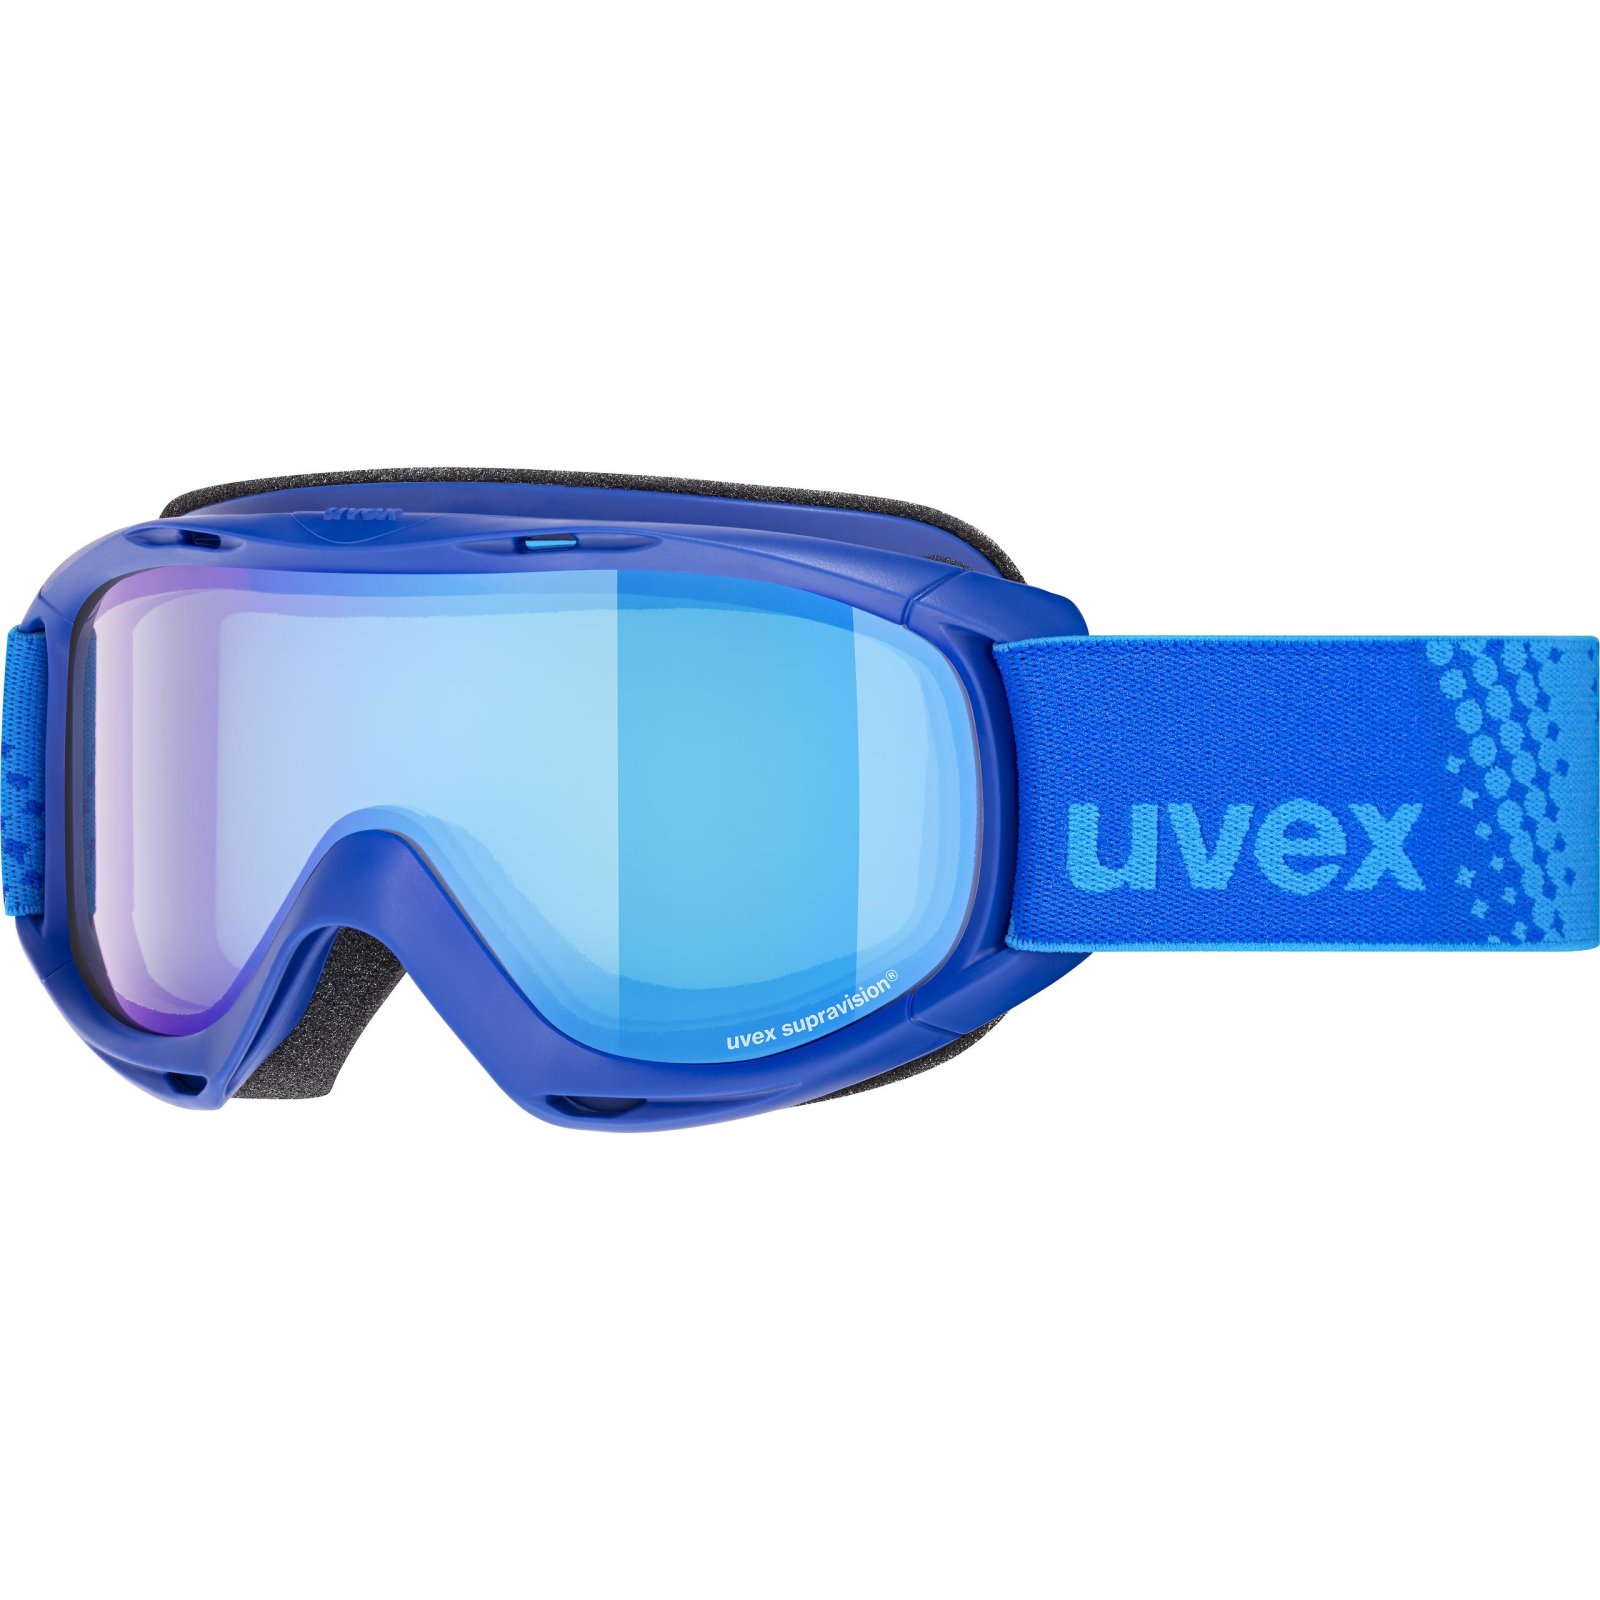 Dětské lyžařské brýle UVEX slider FM 20/21